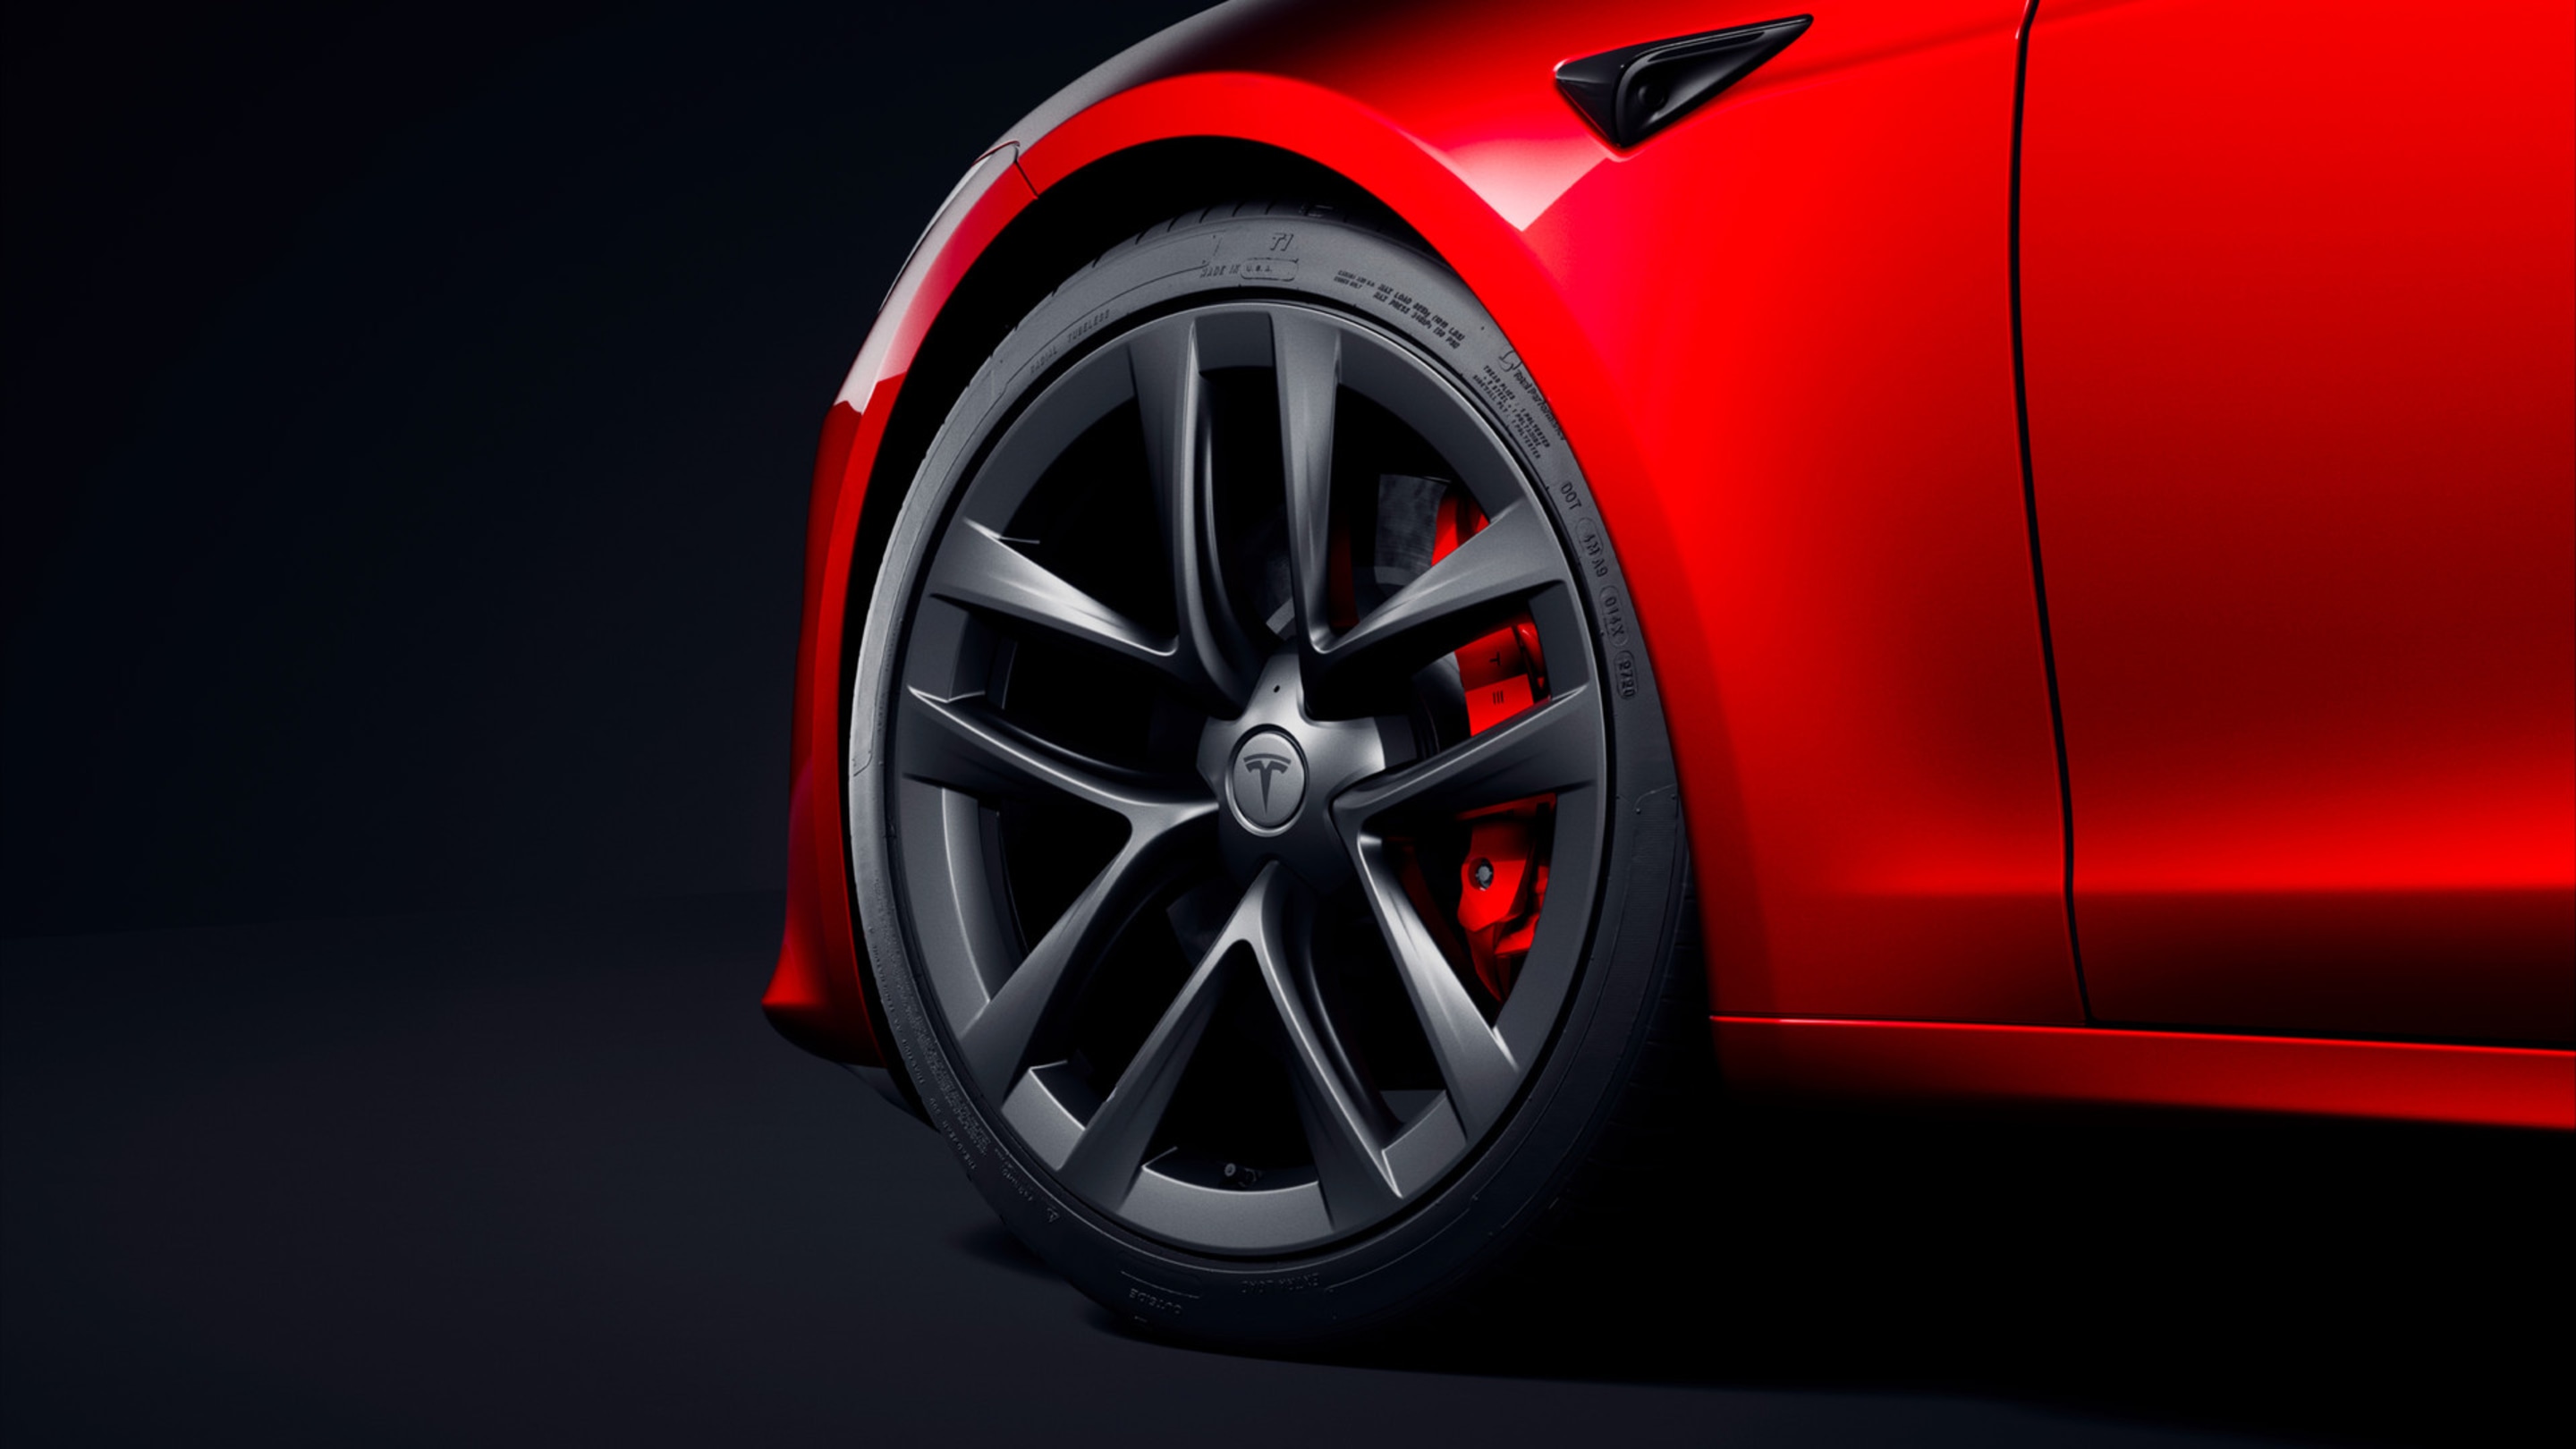 Lijevi prednji kotač na crvenom vozilu Model S